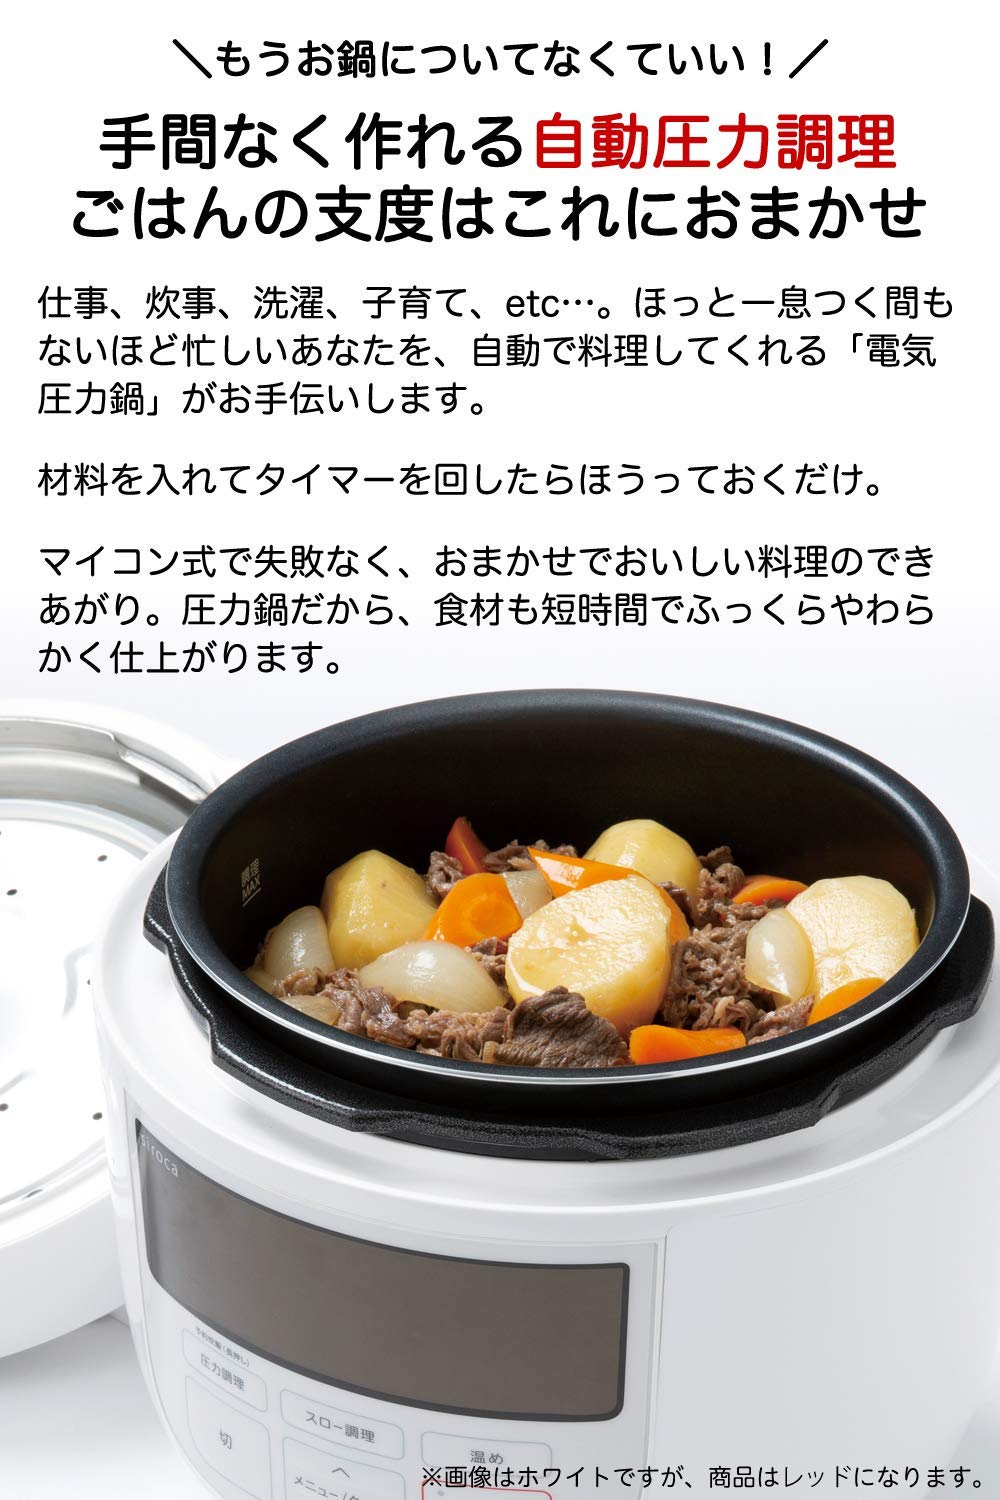 2色日本公司貨2018新款siroca SP-4D151 電子壓力鍋4L 大容量多功能壓力鍋燉鍋自由定時高壓烹煮SIROCA 另有SP-D131  日本必買代購|